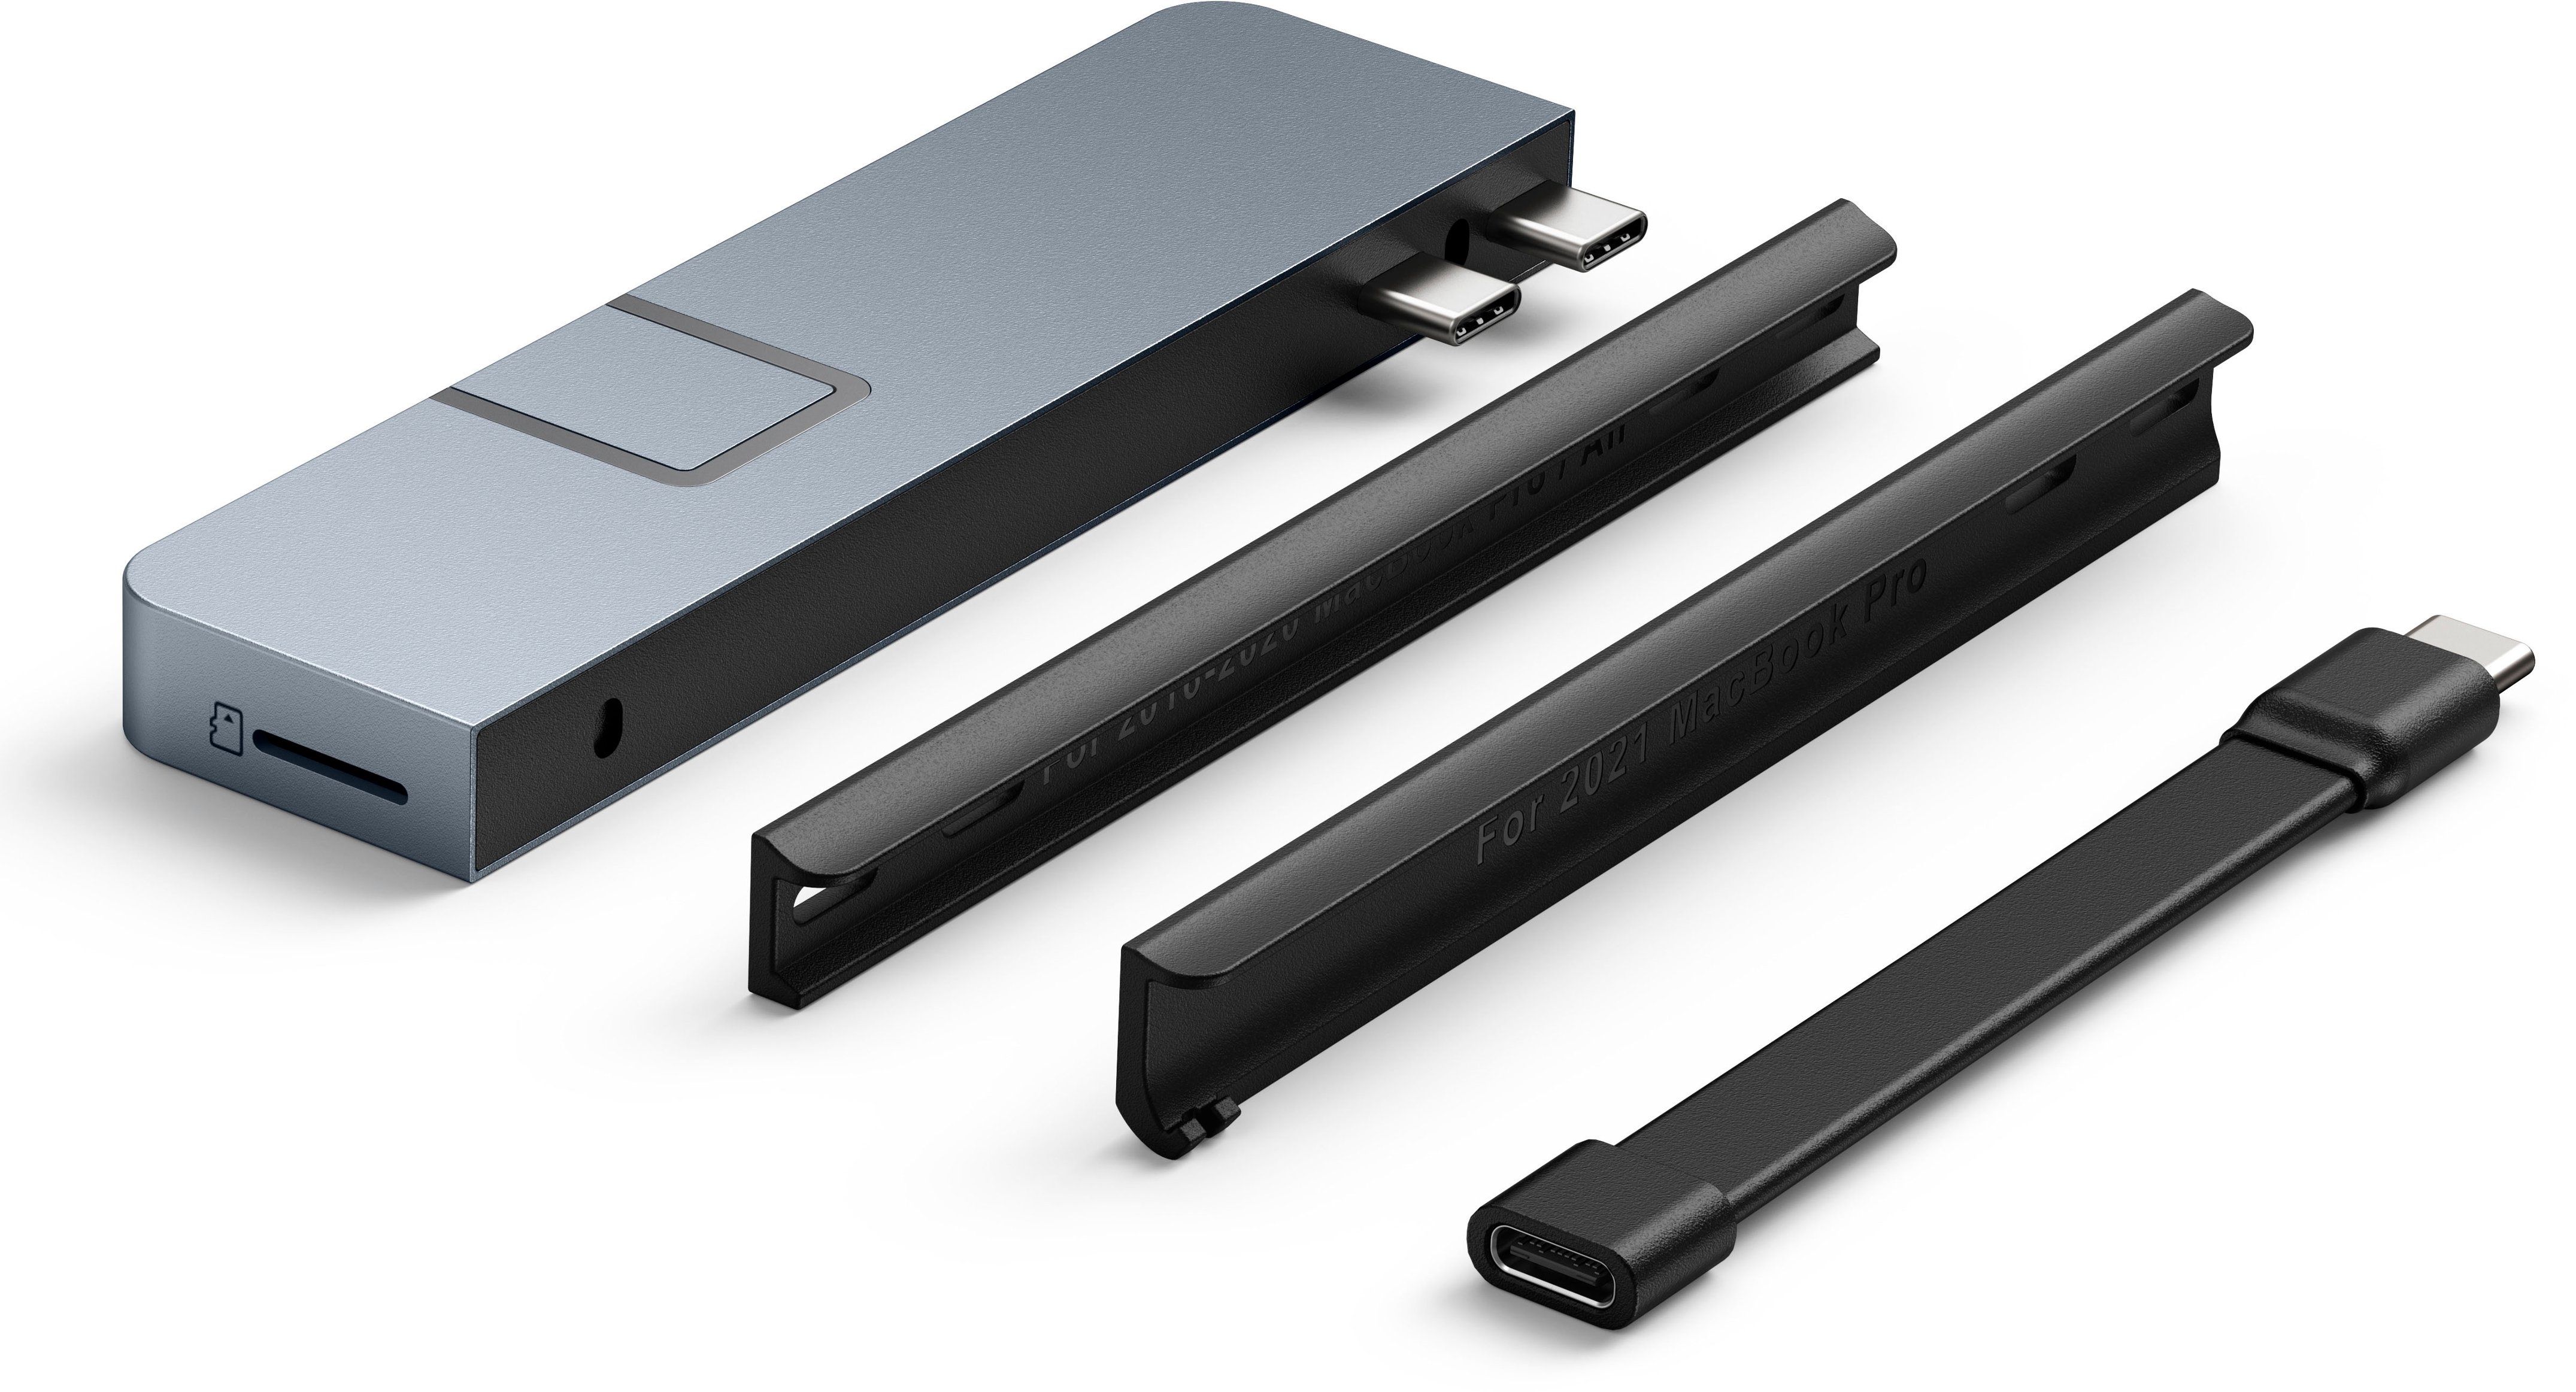 Hub USB Hyper Accessoires Mac Station d'accueil et DockDrive NET 6-in-2  Dock pour MacBook Pro Touch Bar - Gris sidéral